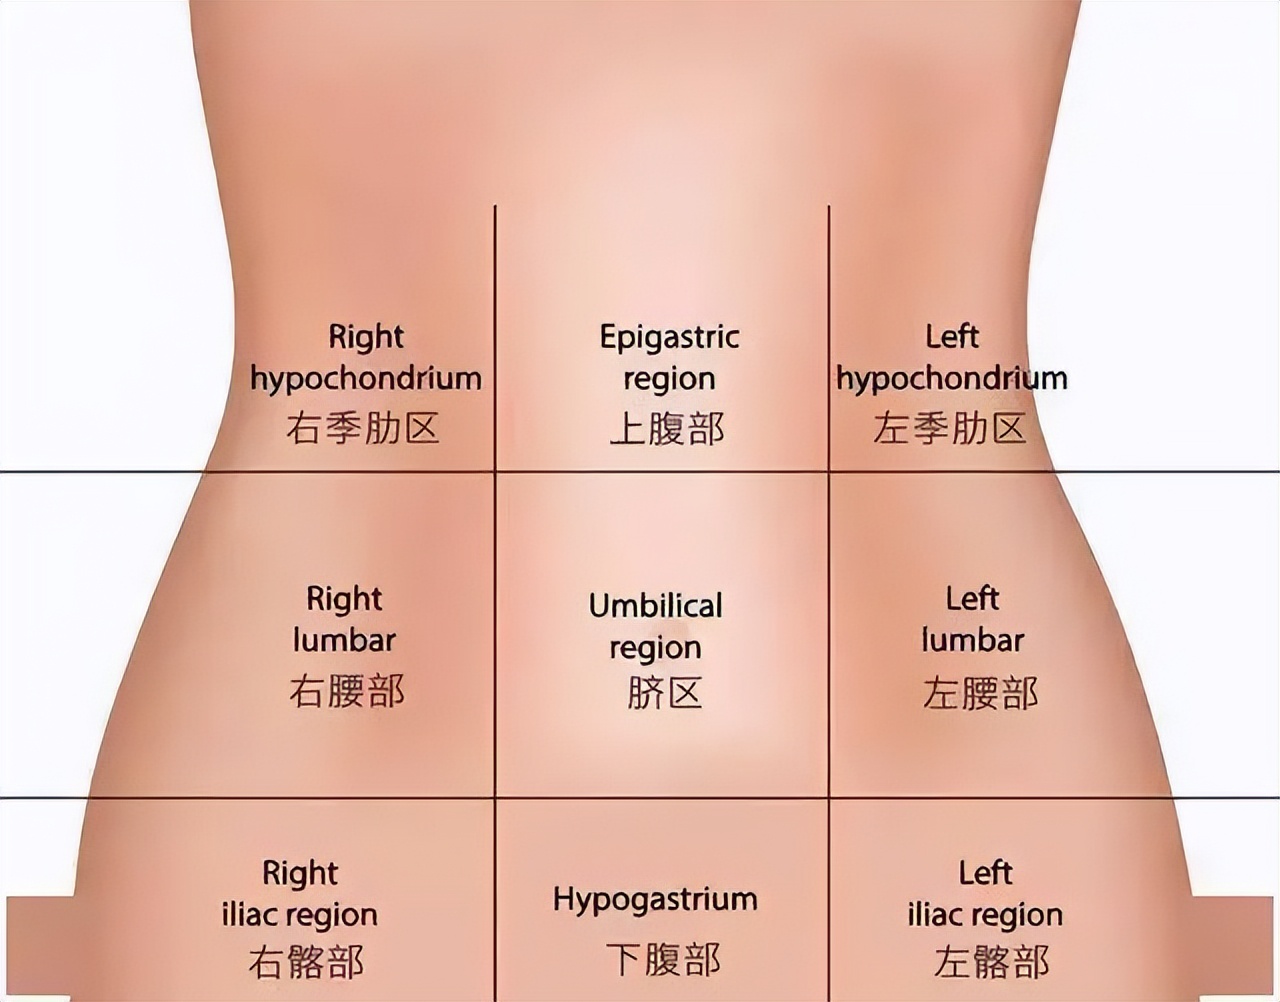 在这里要强调一点,腹痛并不一定是消化道问题,由于人体的腹部结构十分